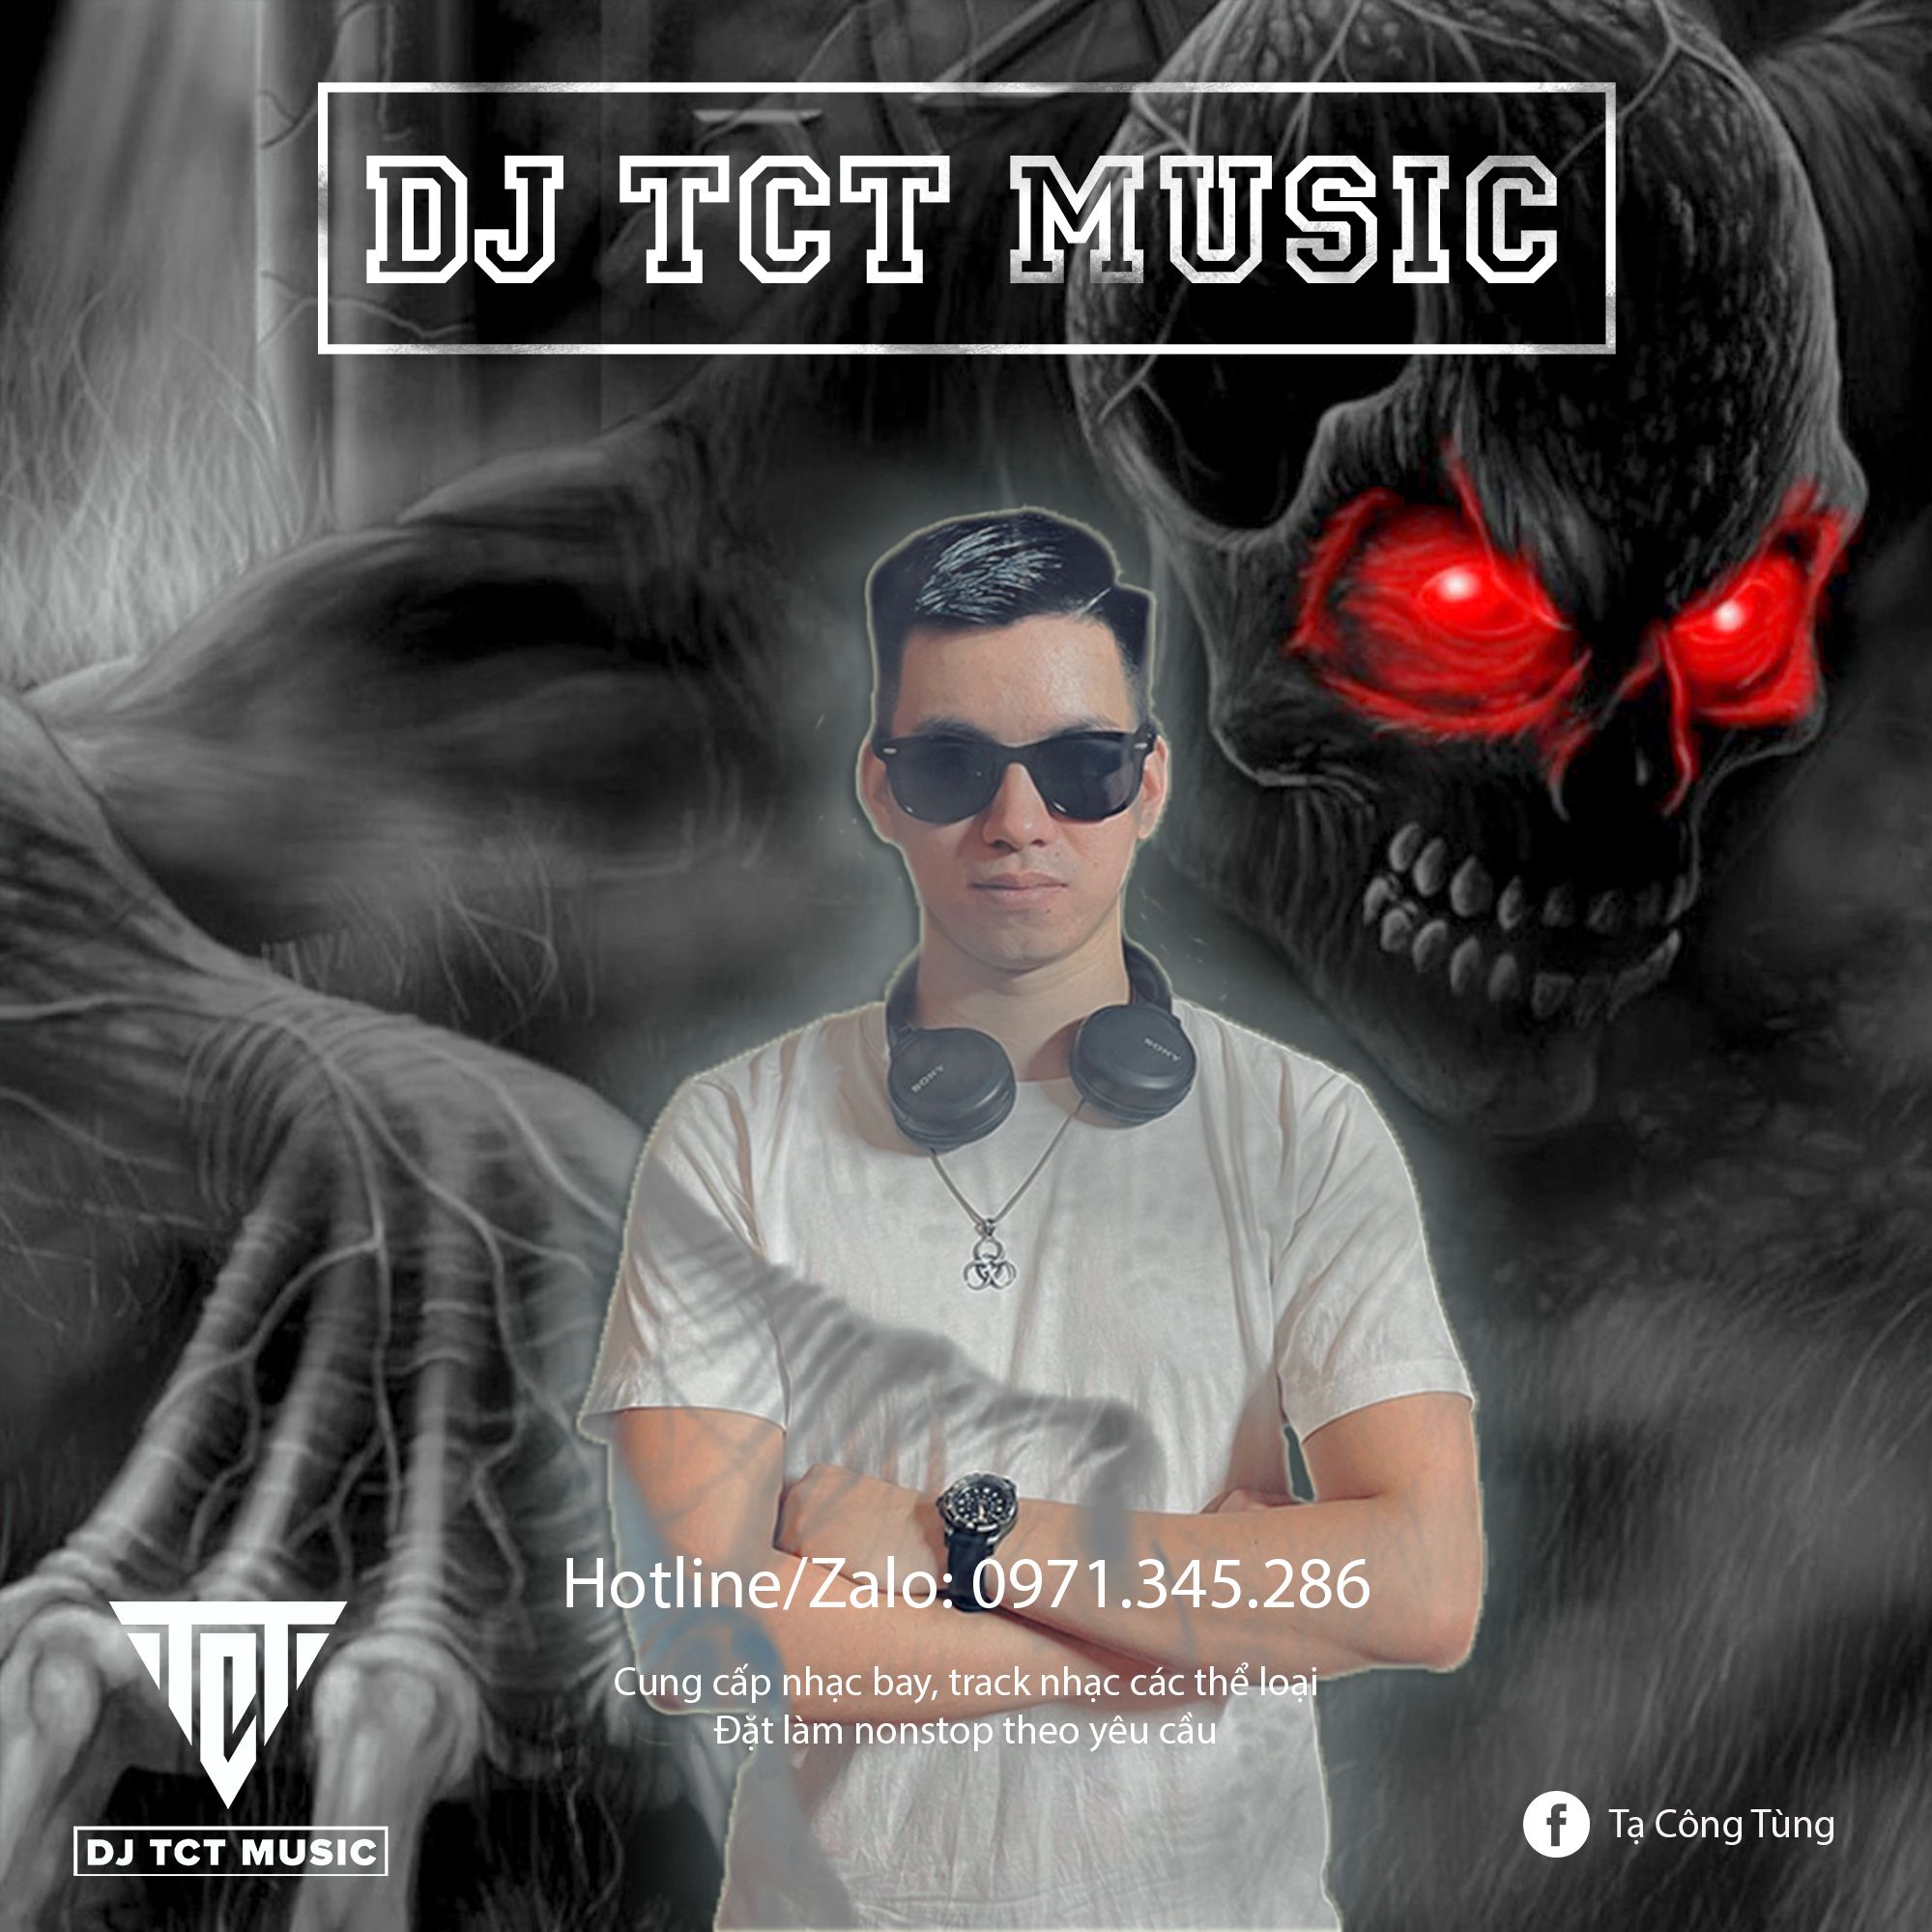 Elŝuti NONSTOP VIỆT MIX LỜI NGUYỀN 2022 .WAV / DJ TCT MUSIC 0971345286 / TRACK NHẠC BAY PHÒNG HAY NHẤT 2022